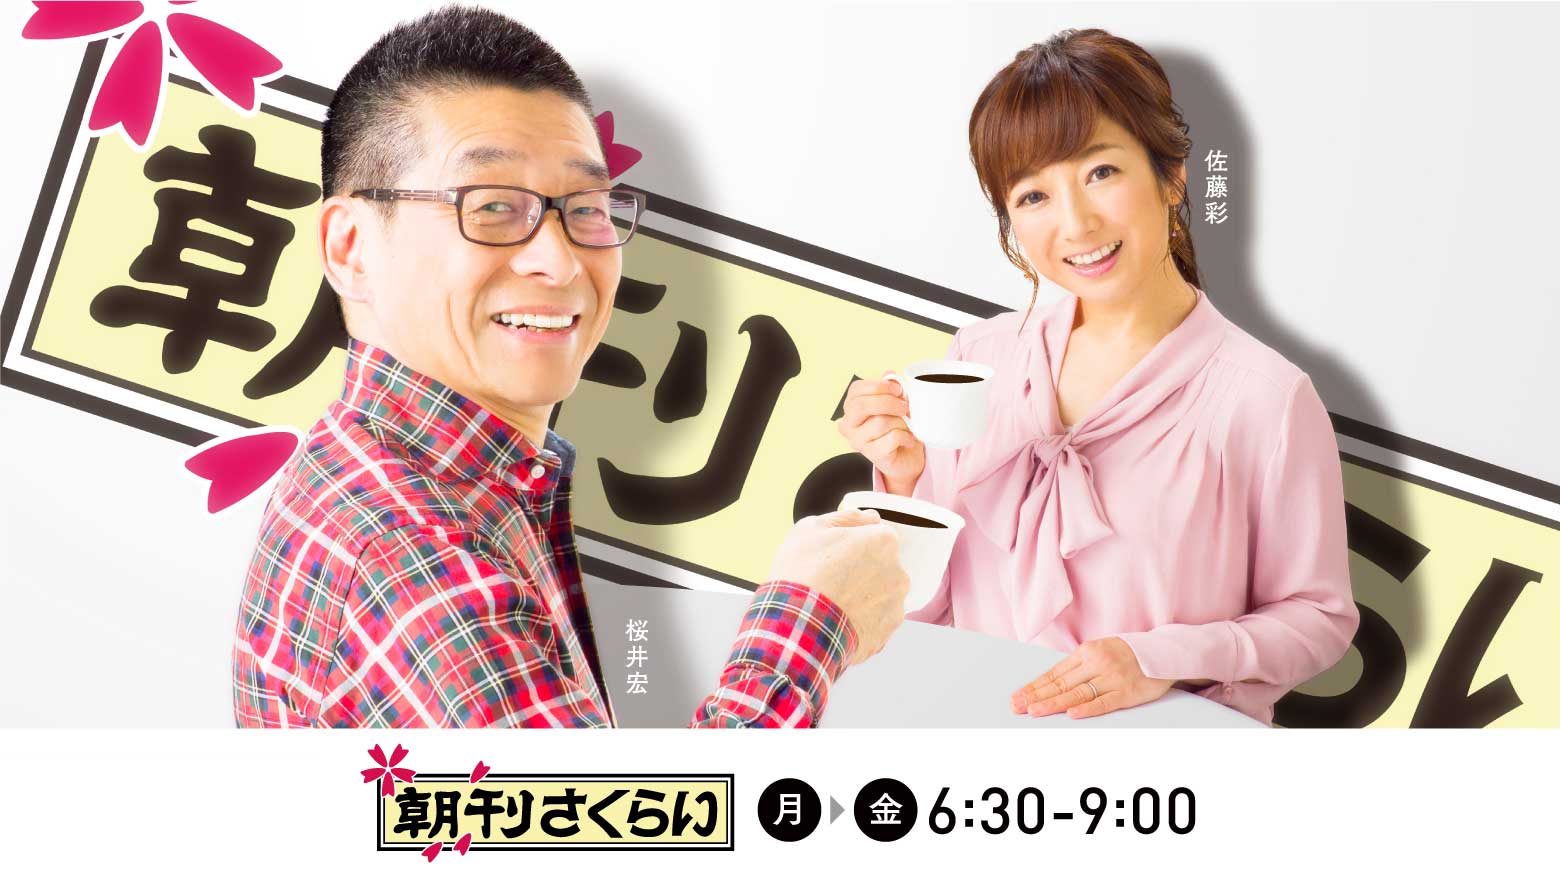 ラジオ Hbc北海道放送